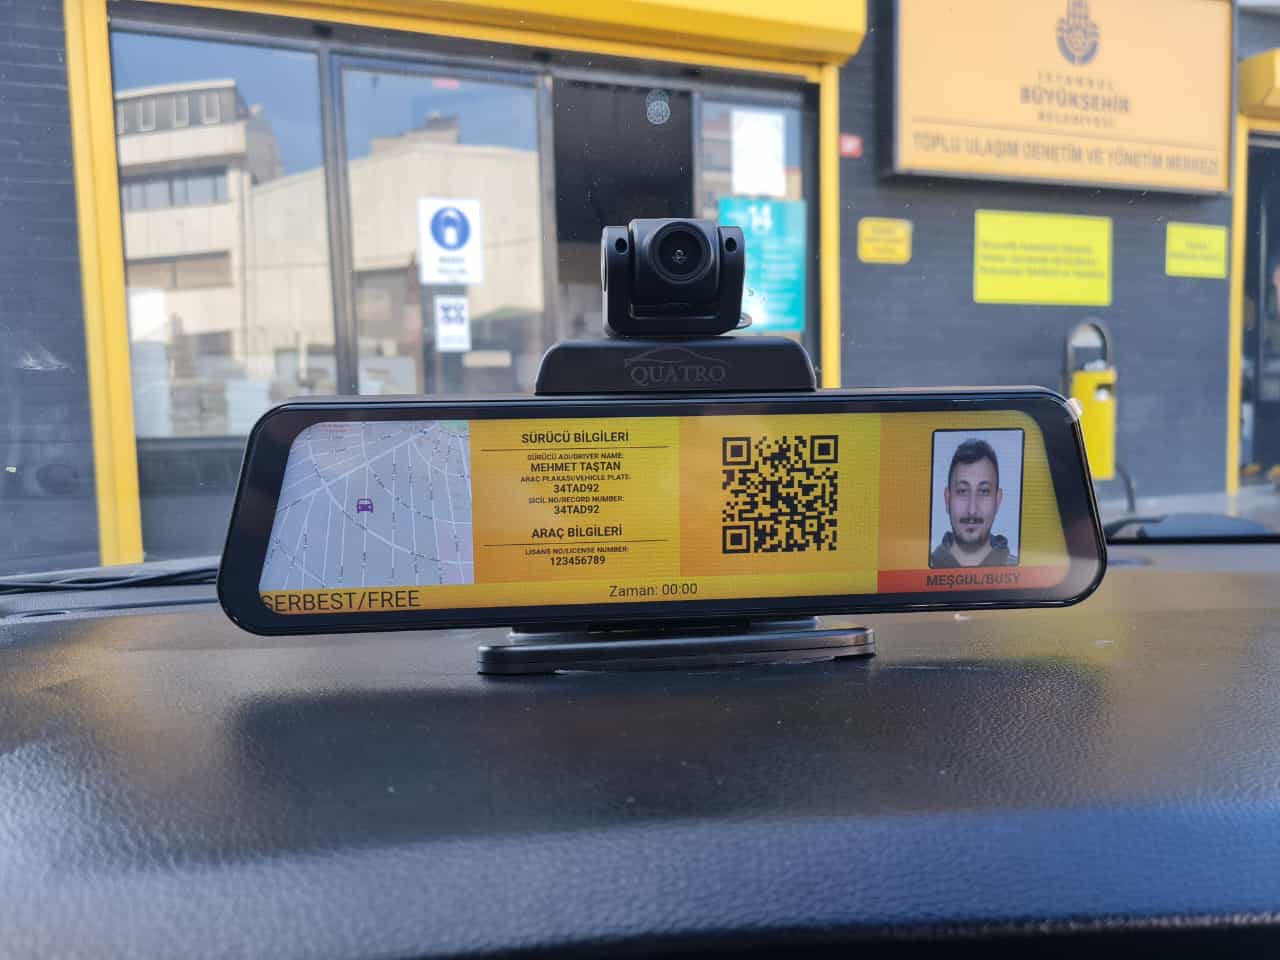 Değerli İstanbul Taksi sürücülerimiz : Mobil Connect sürücü uygulamasını İstanbul Taksi Cihazları ile QR kodu okutarak eşleştiriniz. Bol bereketli kazançlar hayırlı işler dileriz